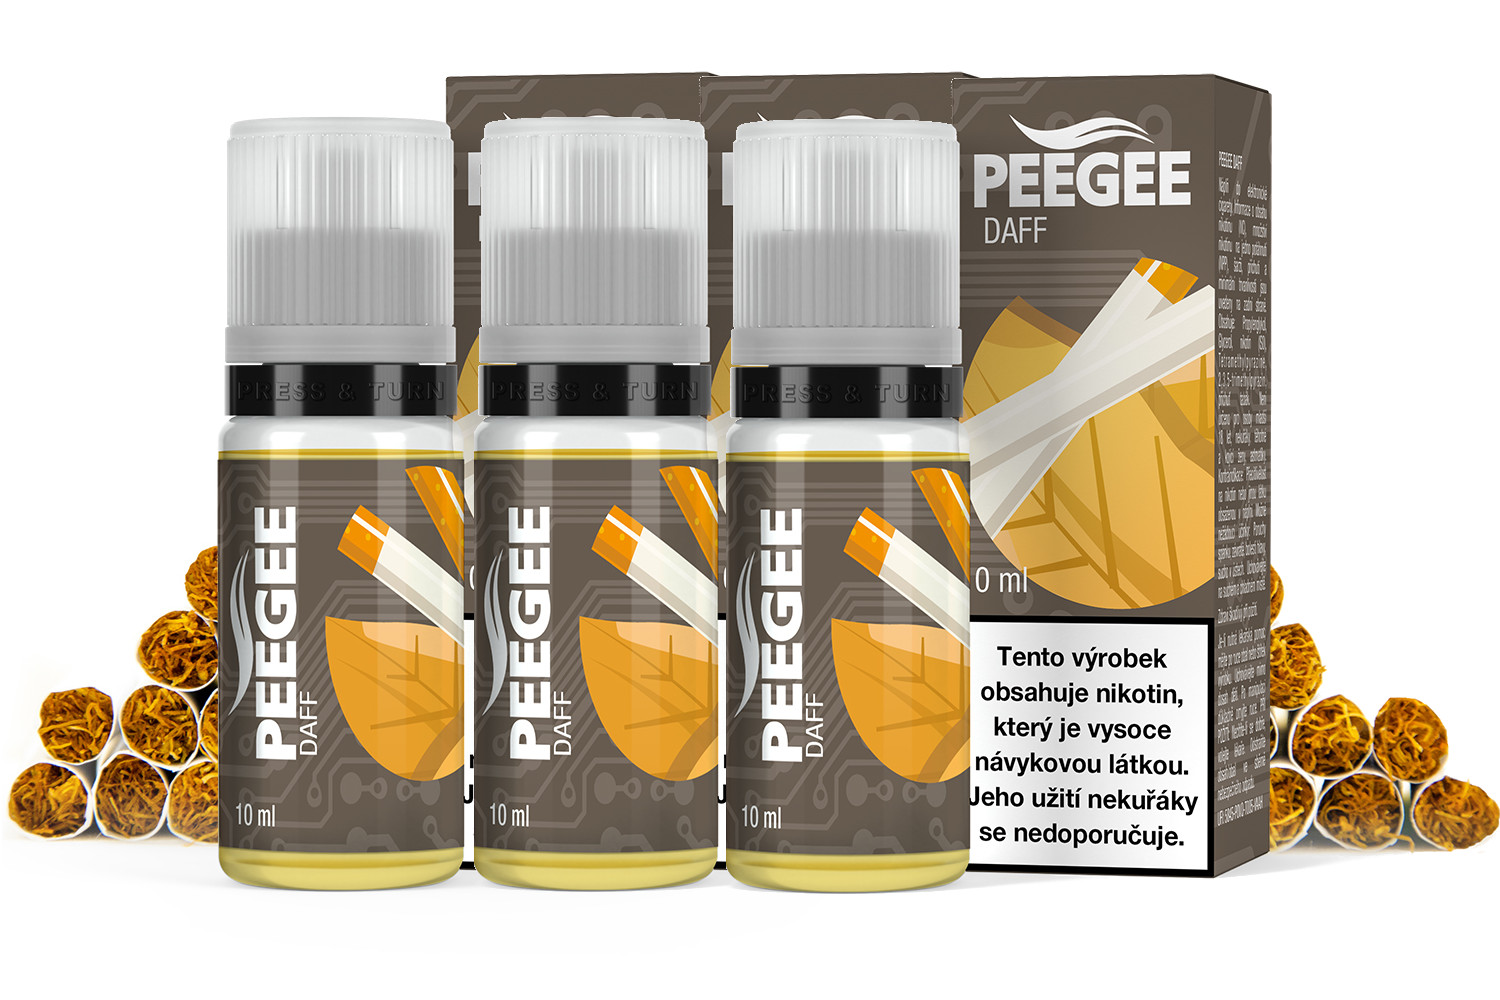 PEEGEE - DAFF 3x10ml Obsah nikotinu: 18mg